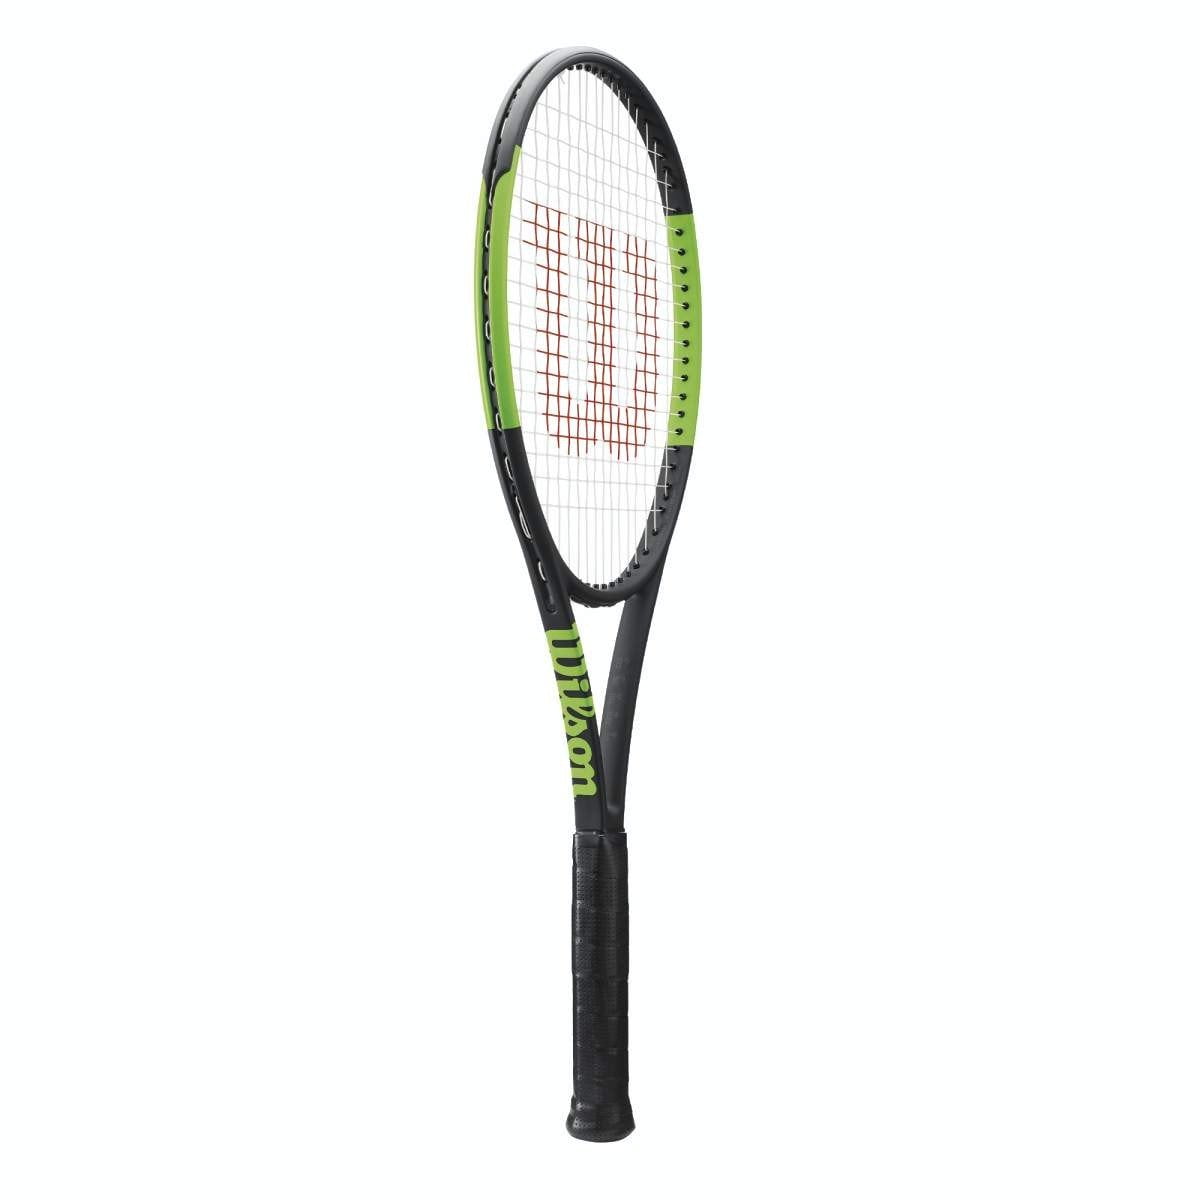 Grip Size 4 1/4" WRT73331U Wilson Blade 104 Tennis Racquet 